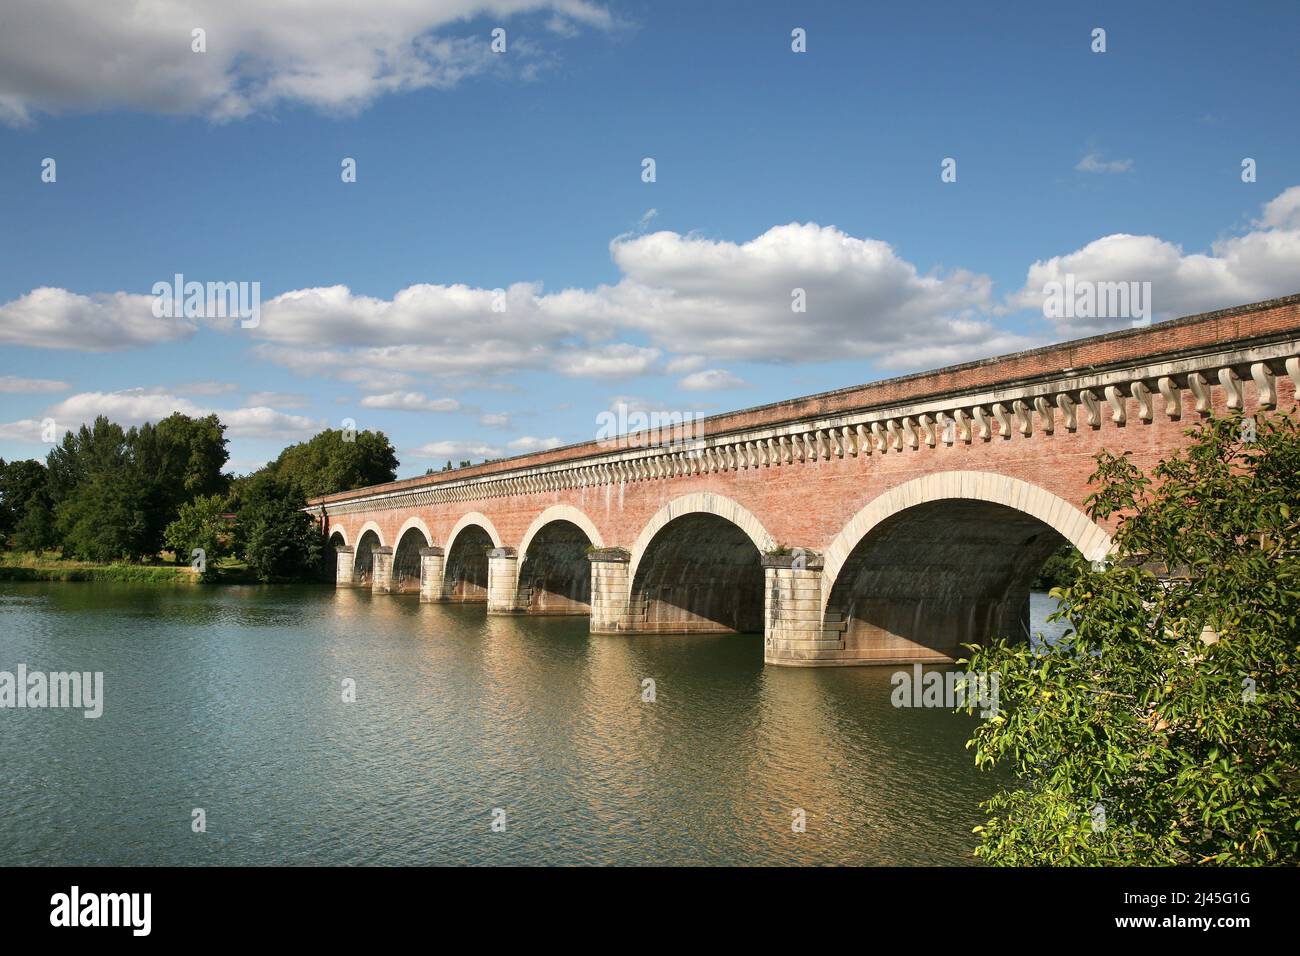 Moissac (sud-ouest de la France) : aqueduc fluvial Òpont-canal du CacorÓ. Pont d'eau entre la Garonne et le Tarn. Détail des arches dans Banque D'Images